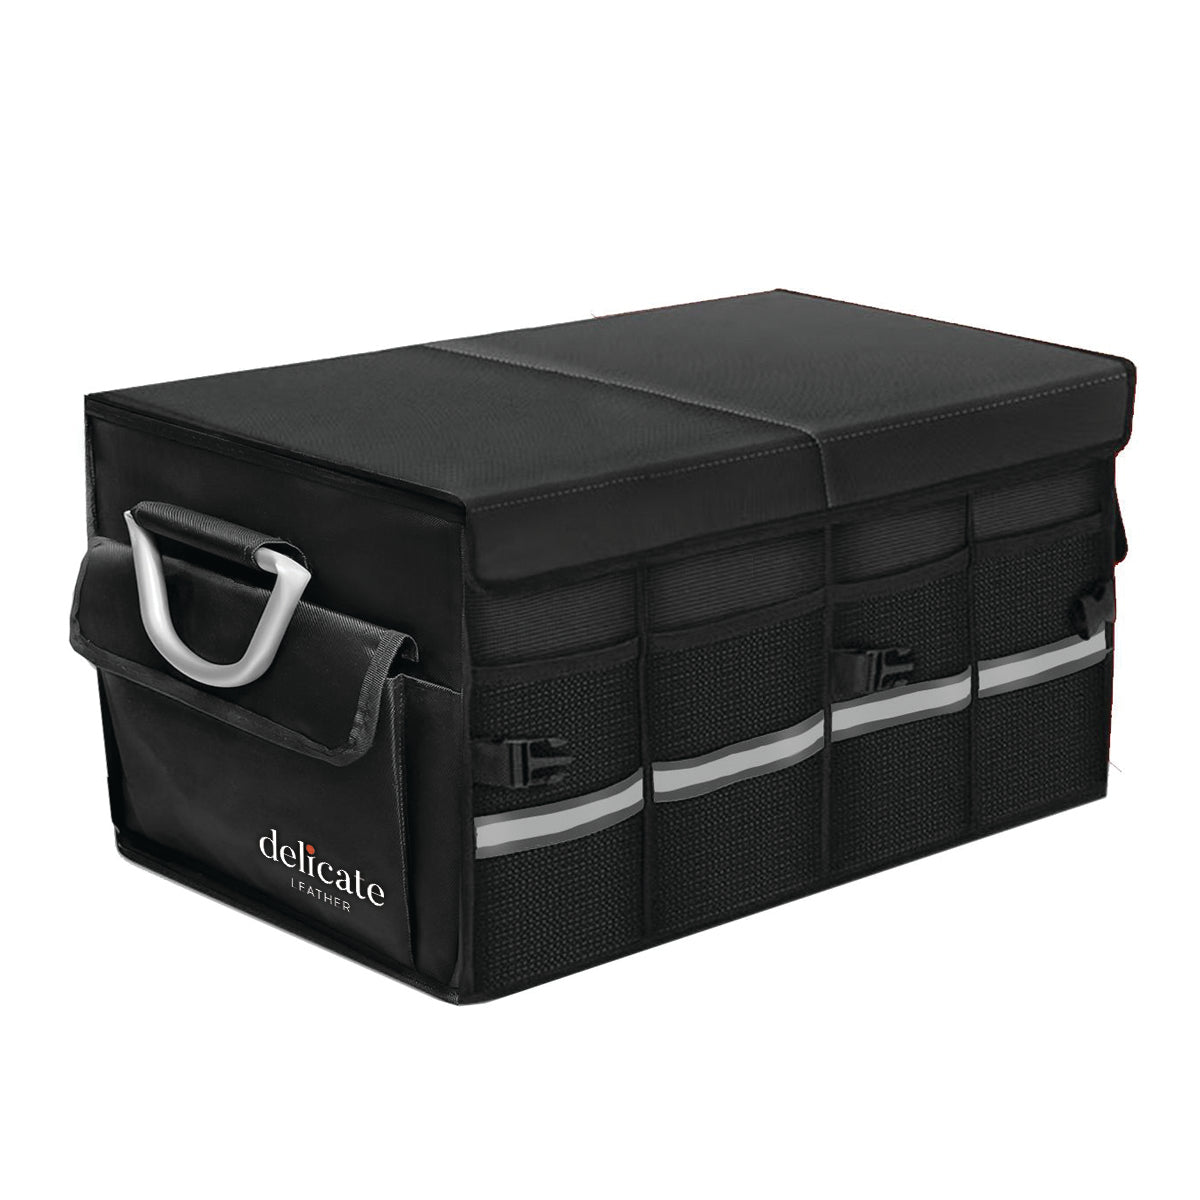 Subaru Organizer For Car Trunk Box Storage, Car Accessories